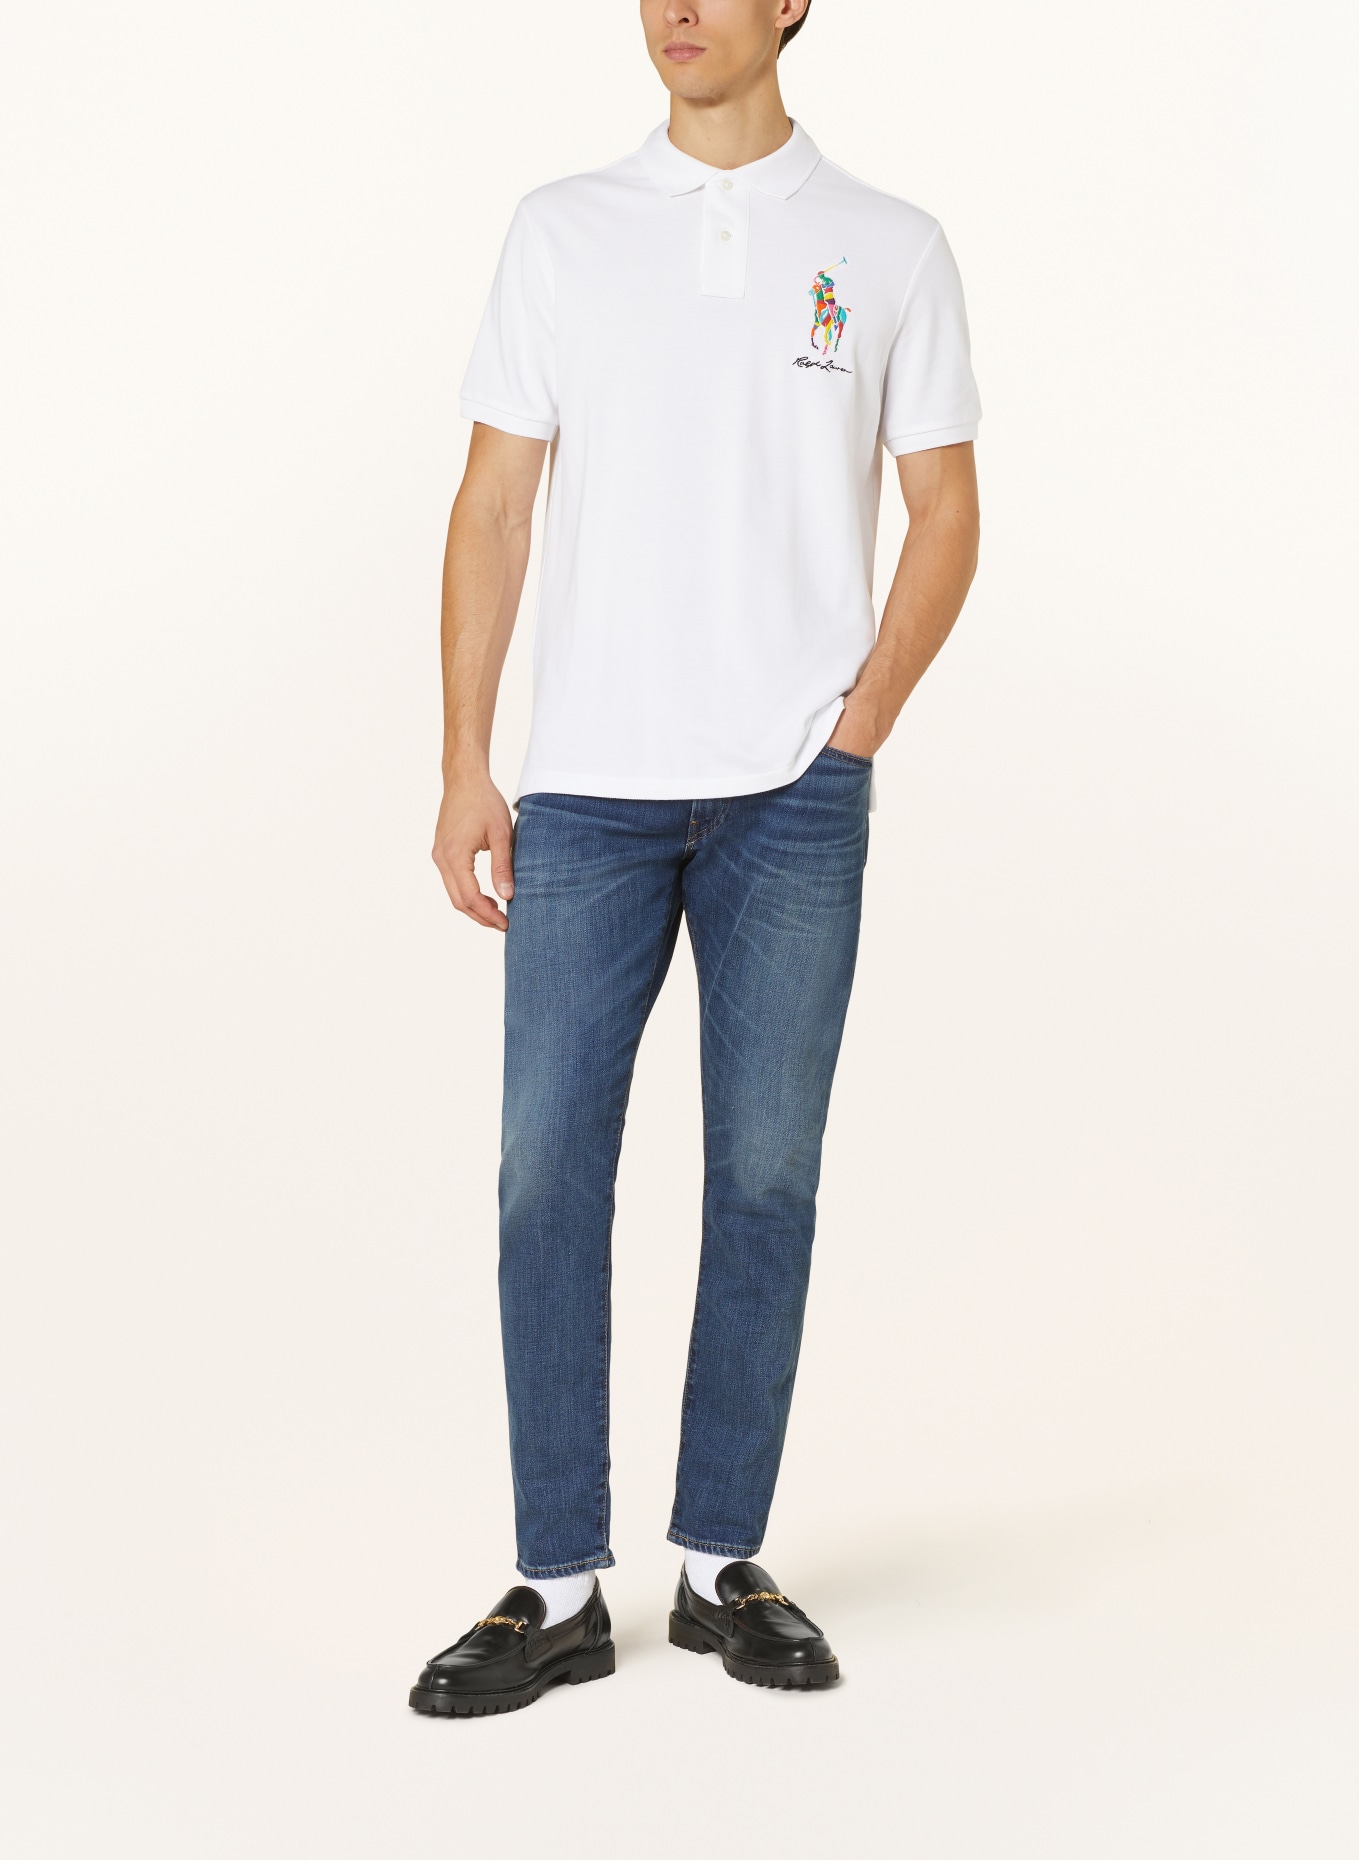 POLO RALPH LAUREN Piqué polo shirt classic fit, Color: WHITE (Image 2)